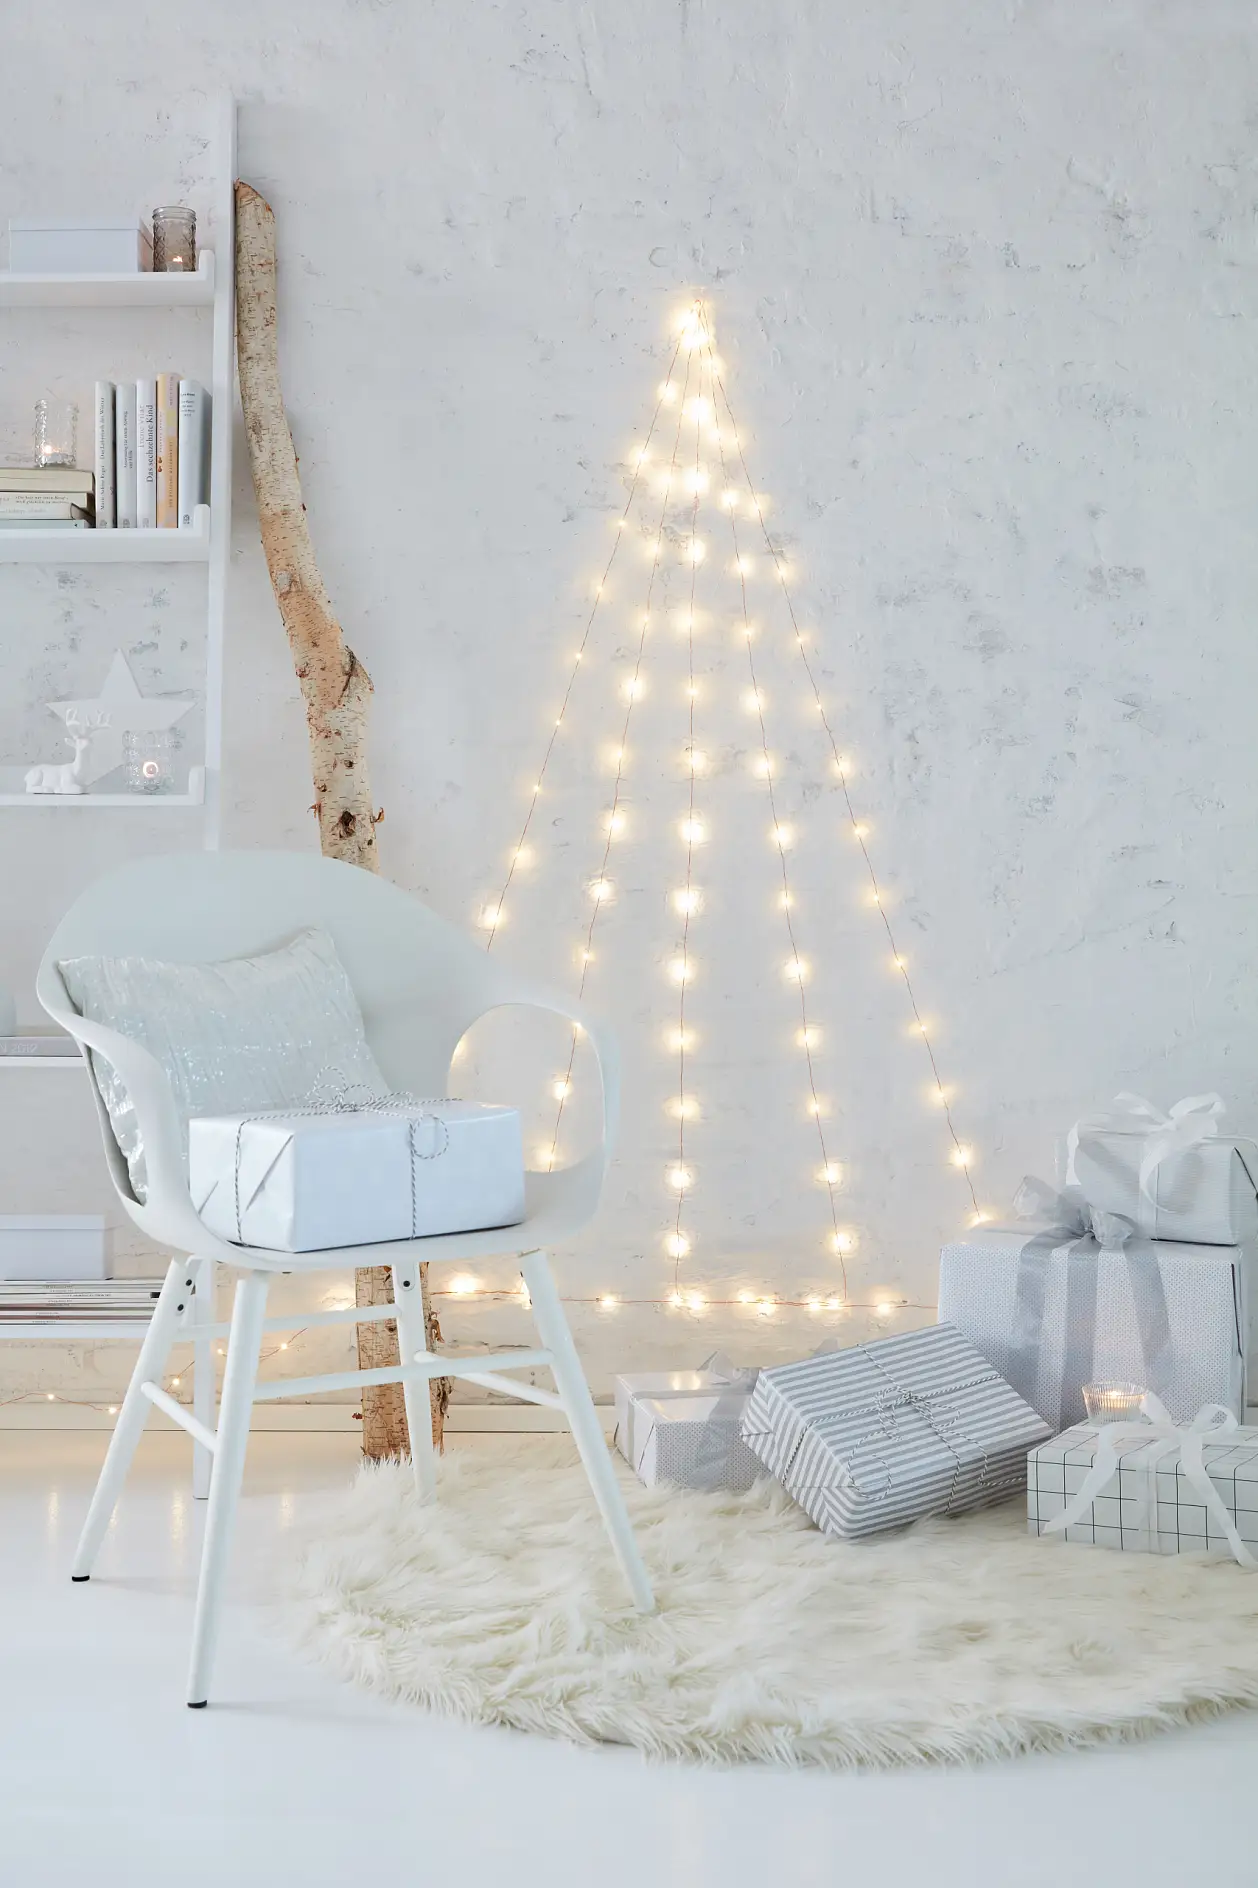 Enjoy your LED wall Christmas tree!